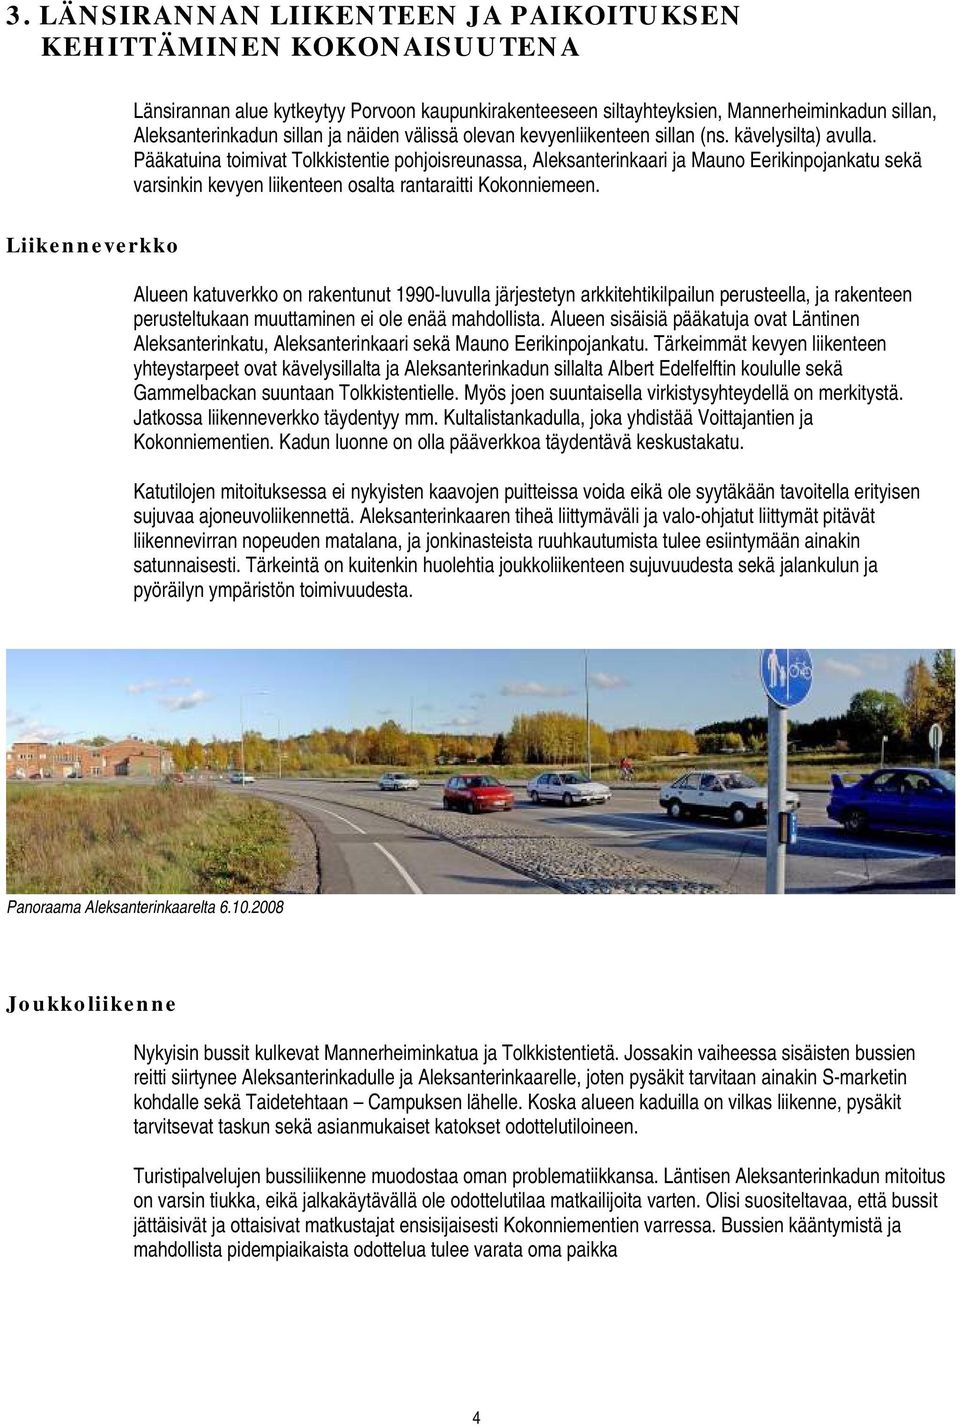 Pääkatuina toimivat Tolkkistentie pohjoisreunassa, Aleksanterinkaari ja Mauno Eerikinpojankatu sekä varsinkin kevyen liikenteen osalta rantaraitti Kokonniemeen.